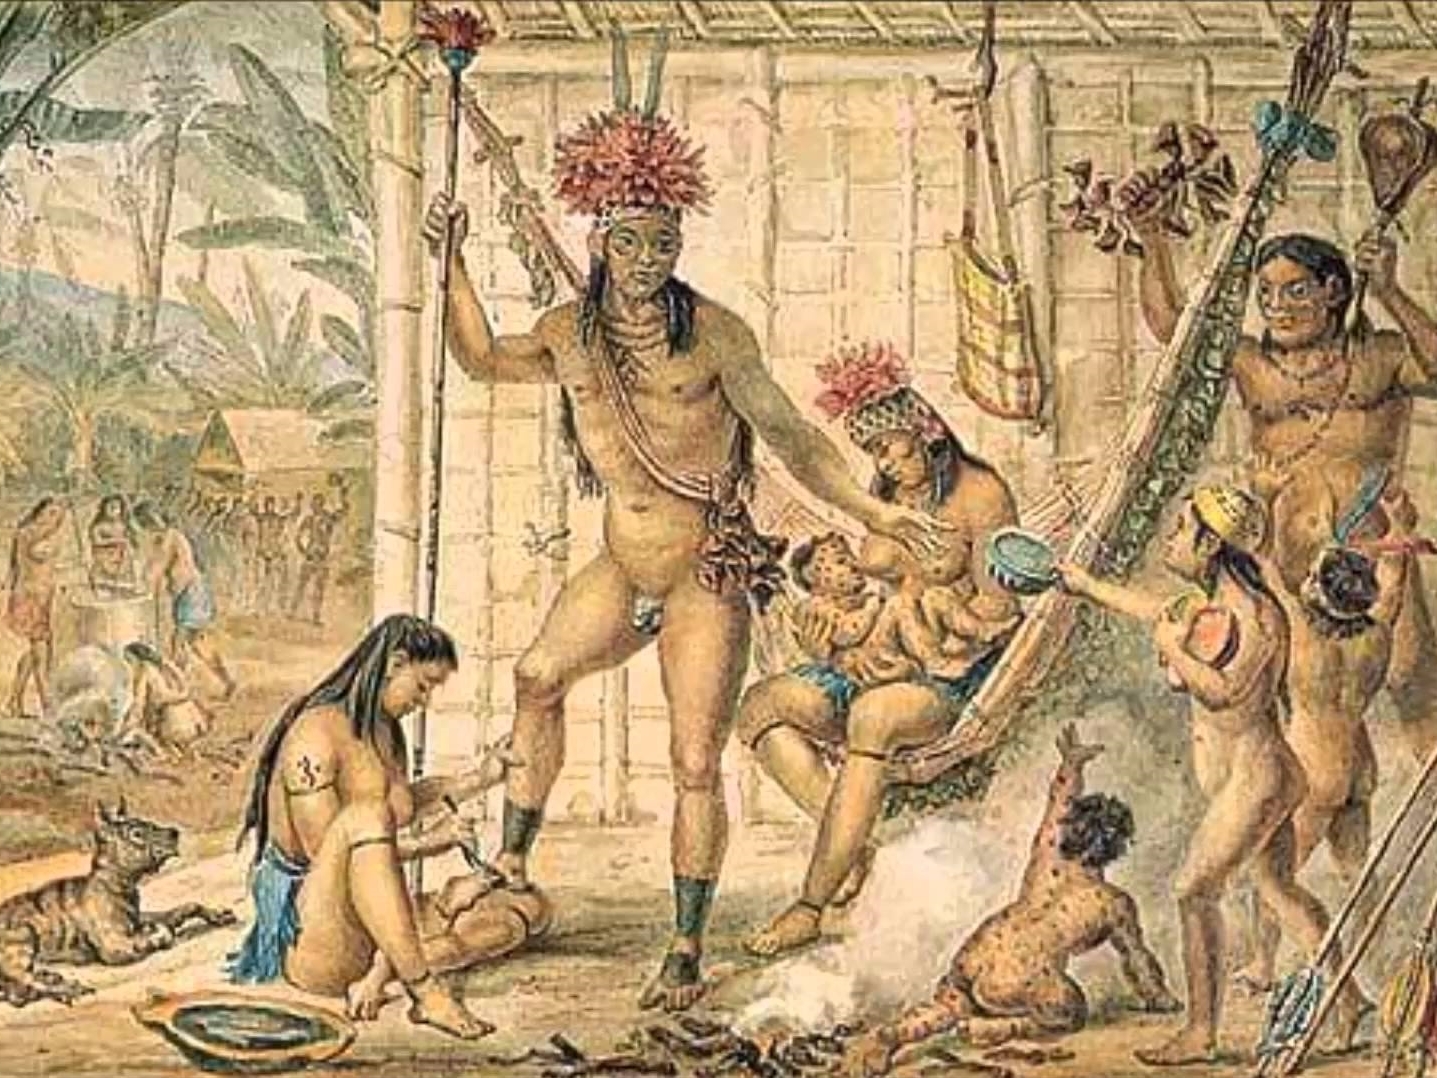 Порно эротика индейцы. Смотреть порно эротика индейцы онлайн